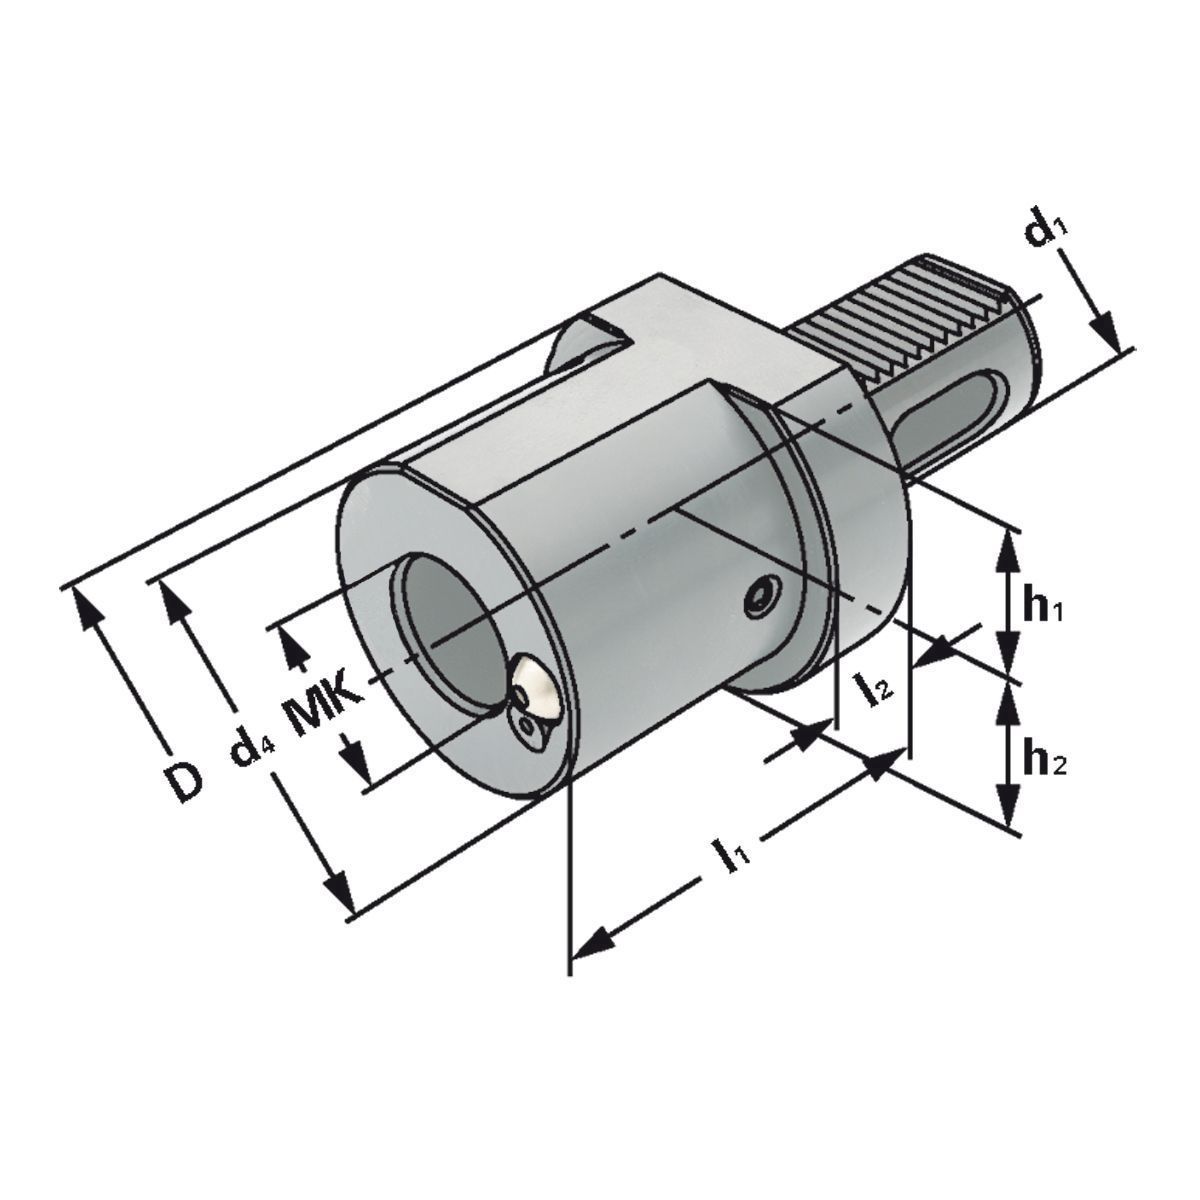 MK-Bohrerhalter F1-30xMK3 DIN 69880 (ISO 10889)